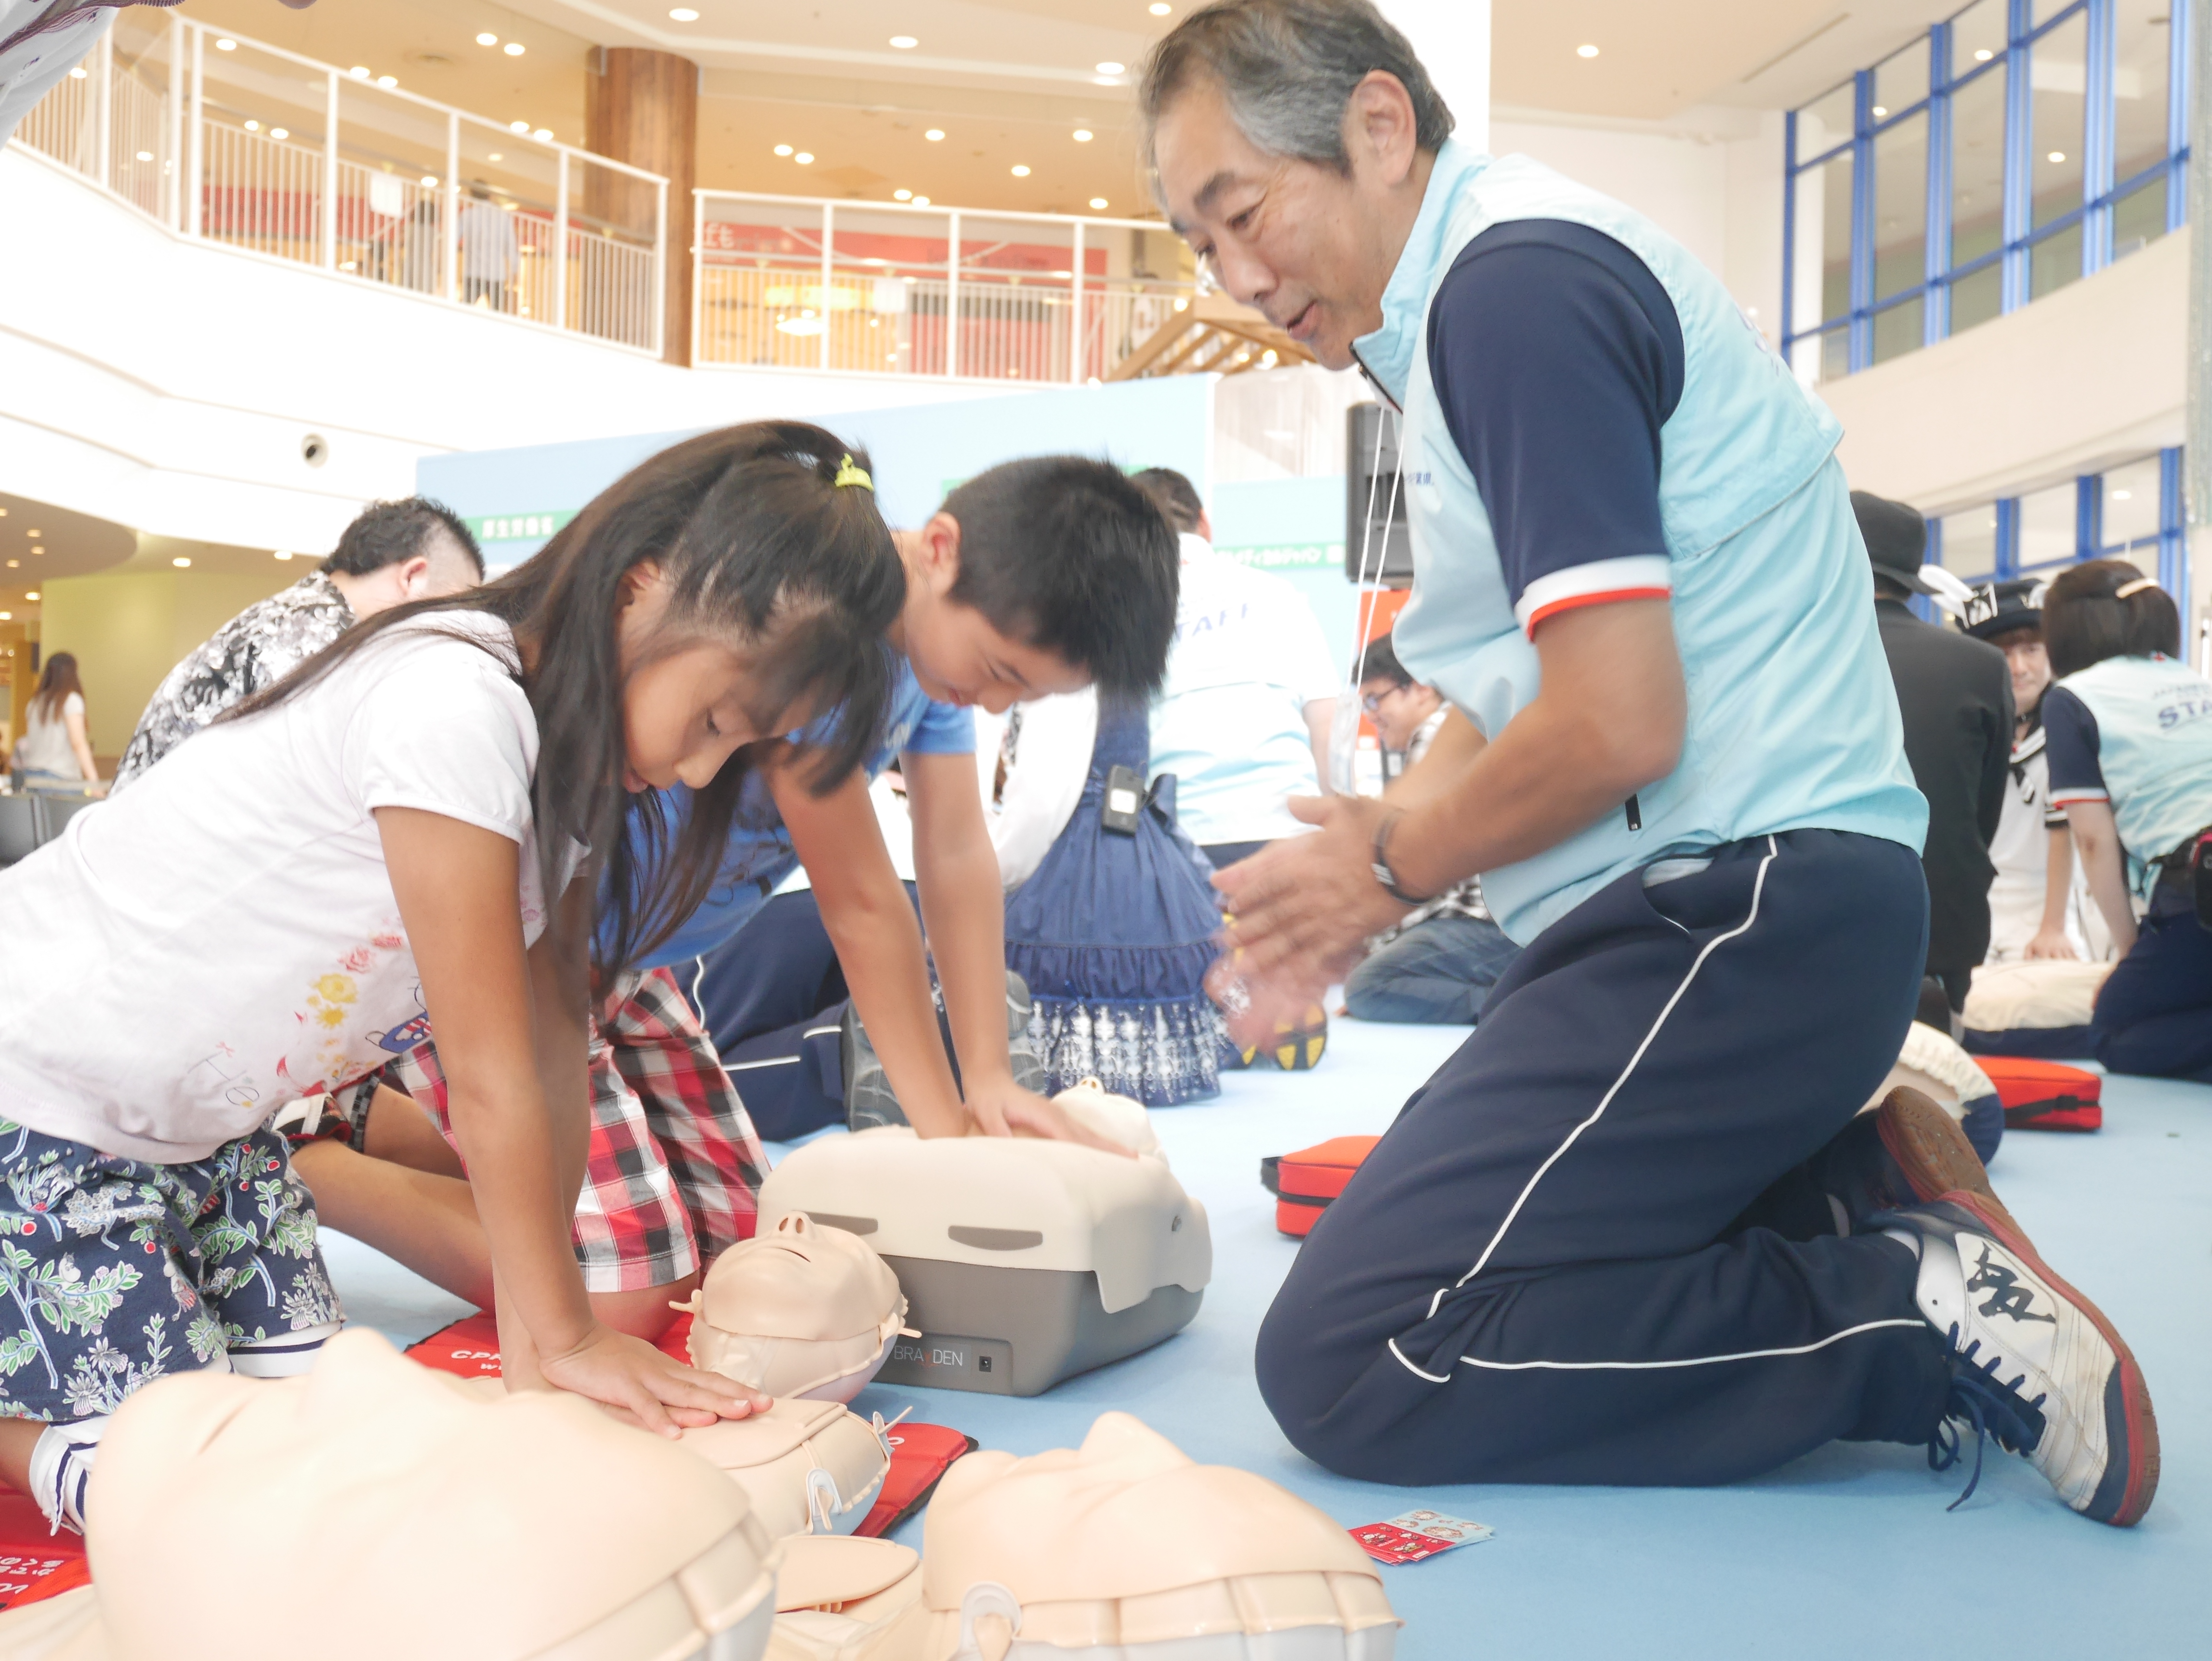 9月4日 日 イベント 救急の日16 を開催 トピックス 救急法等の講習 活動内容 実績を知る 日本赤十字社